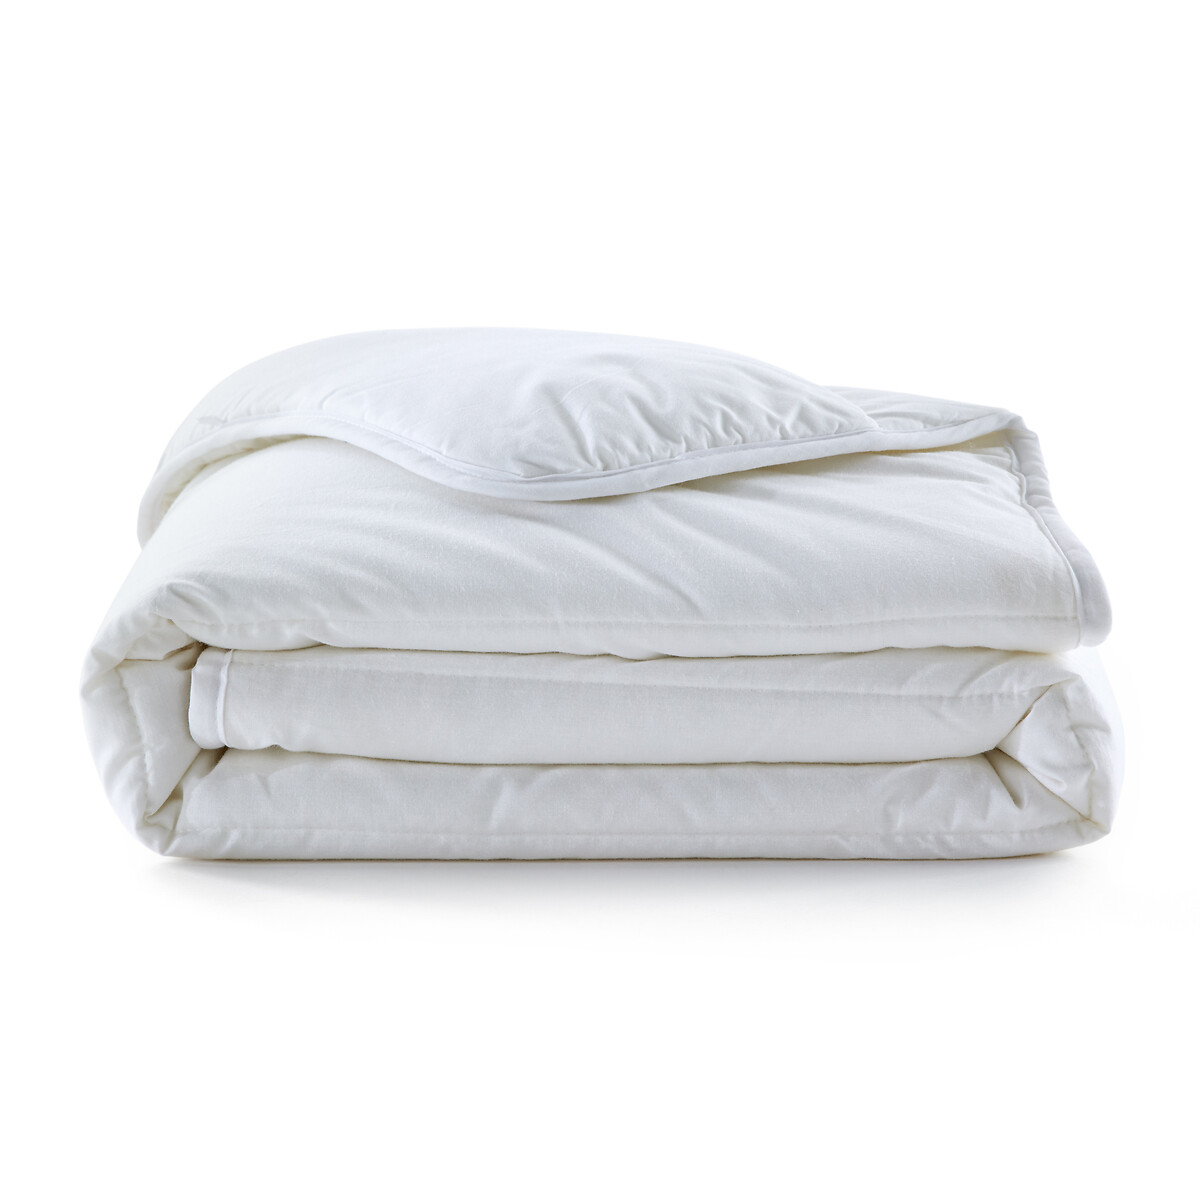 Одеяло La Redoute Детское с обработкой 75 x 120 см белый, размер 75 x 120 см - фото 2